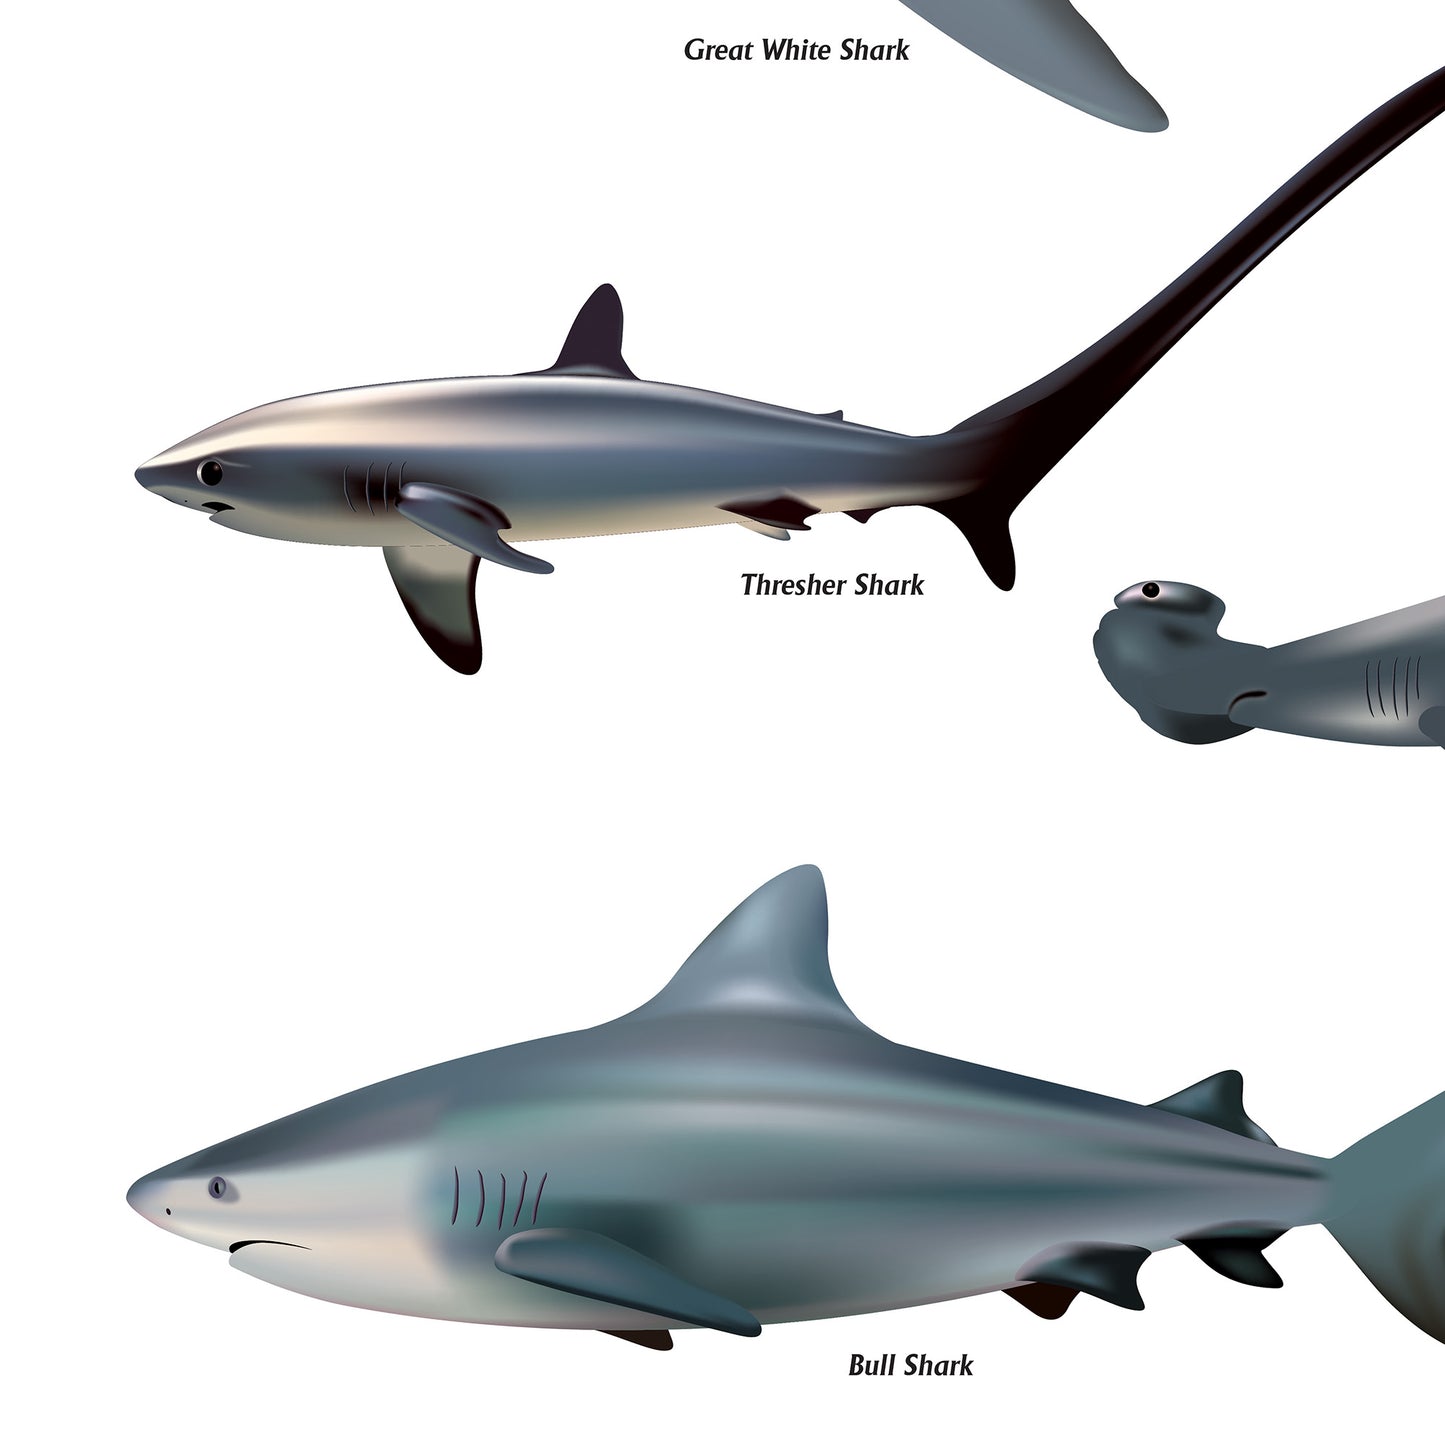 Shark Sea Fish Swimming Poster Wall Print